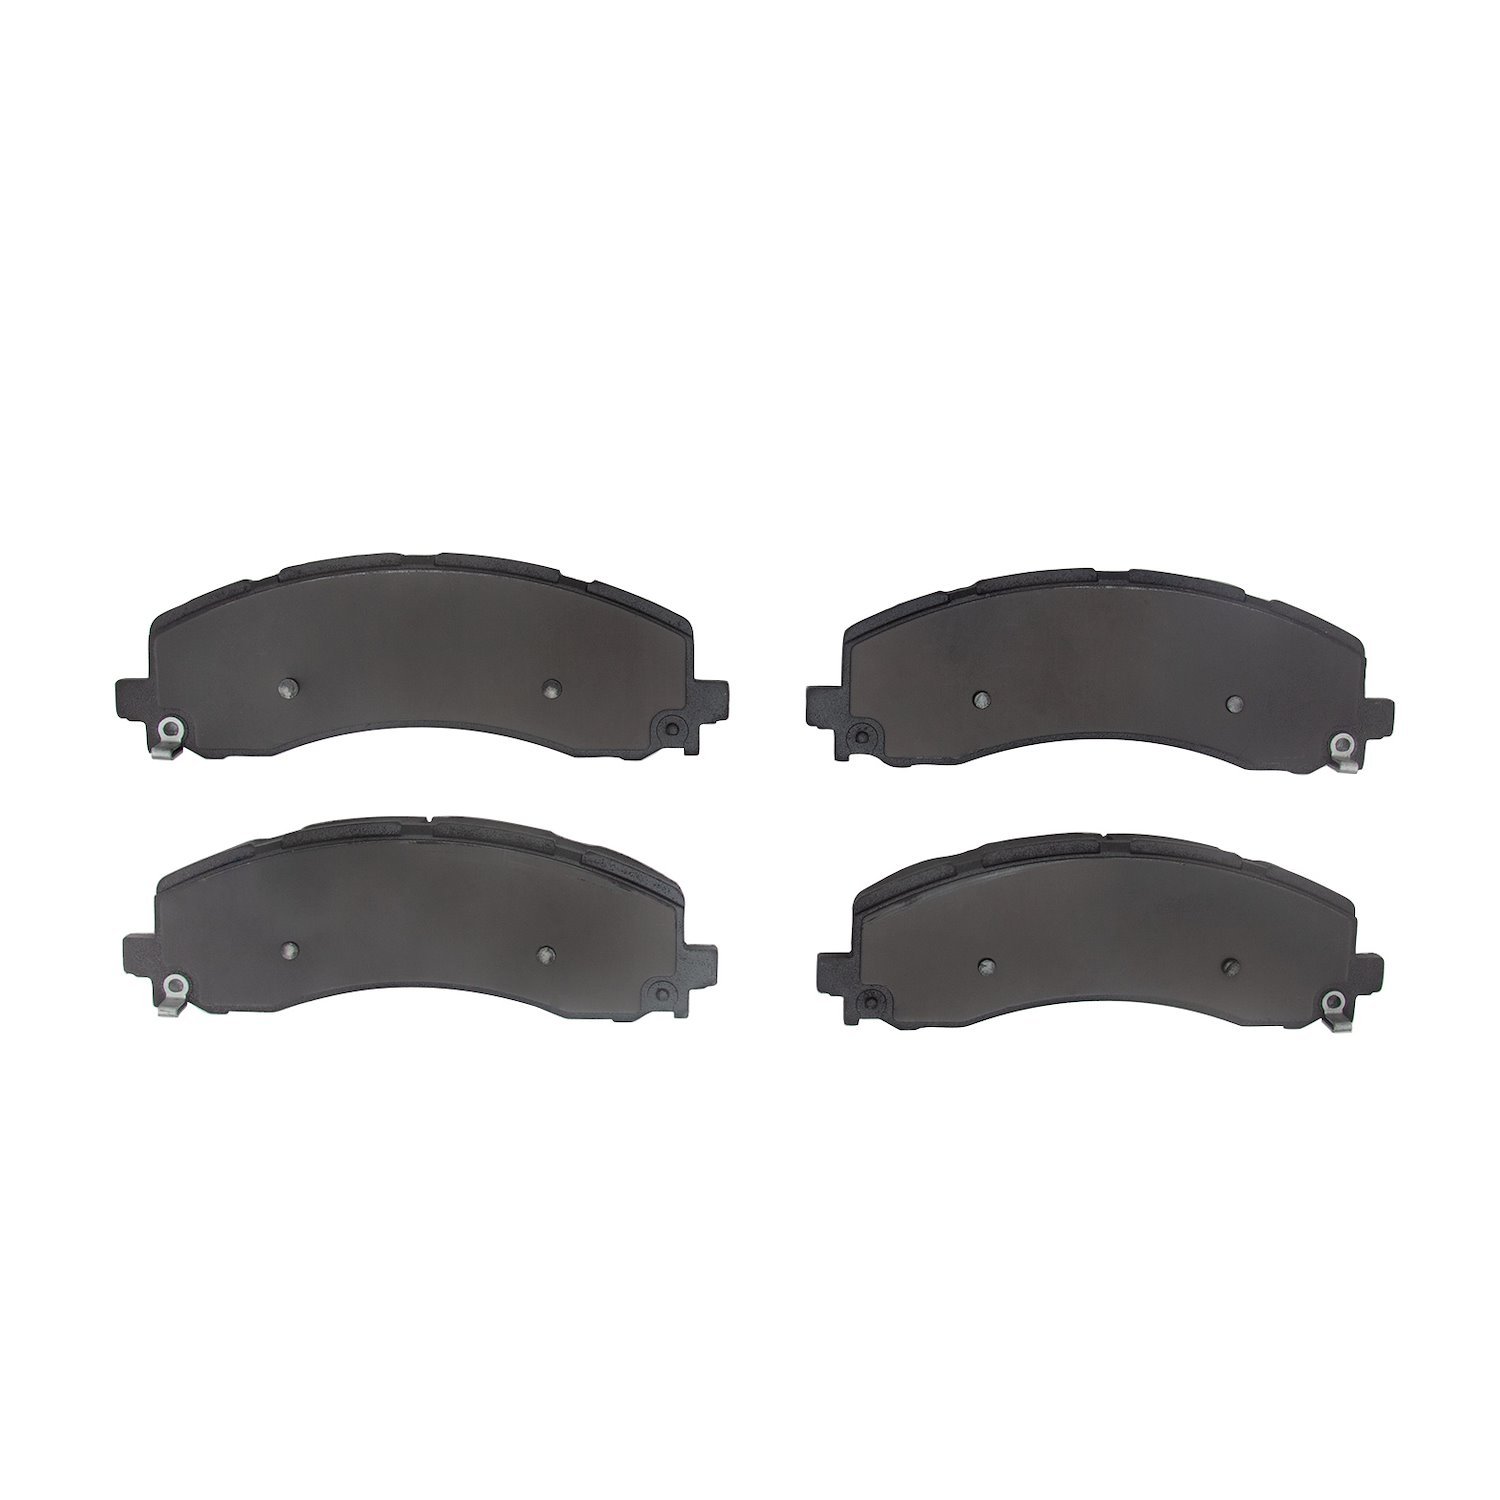 1214-2225-00 Heavy-Duty Semi-Metallic Brake Pads, Fits Select Mopar, Position: Rear